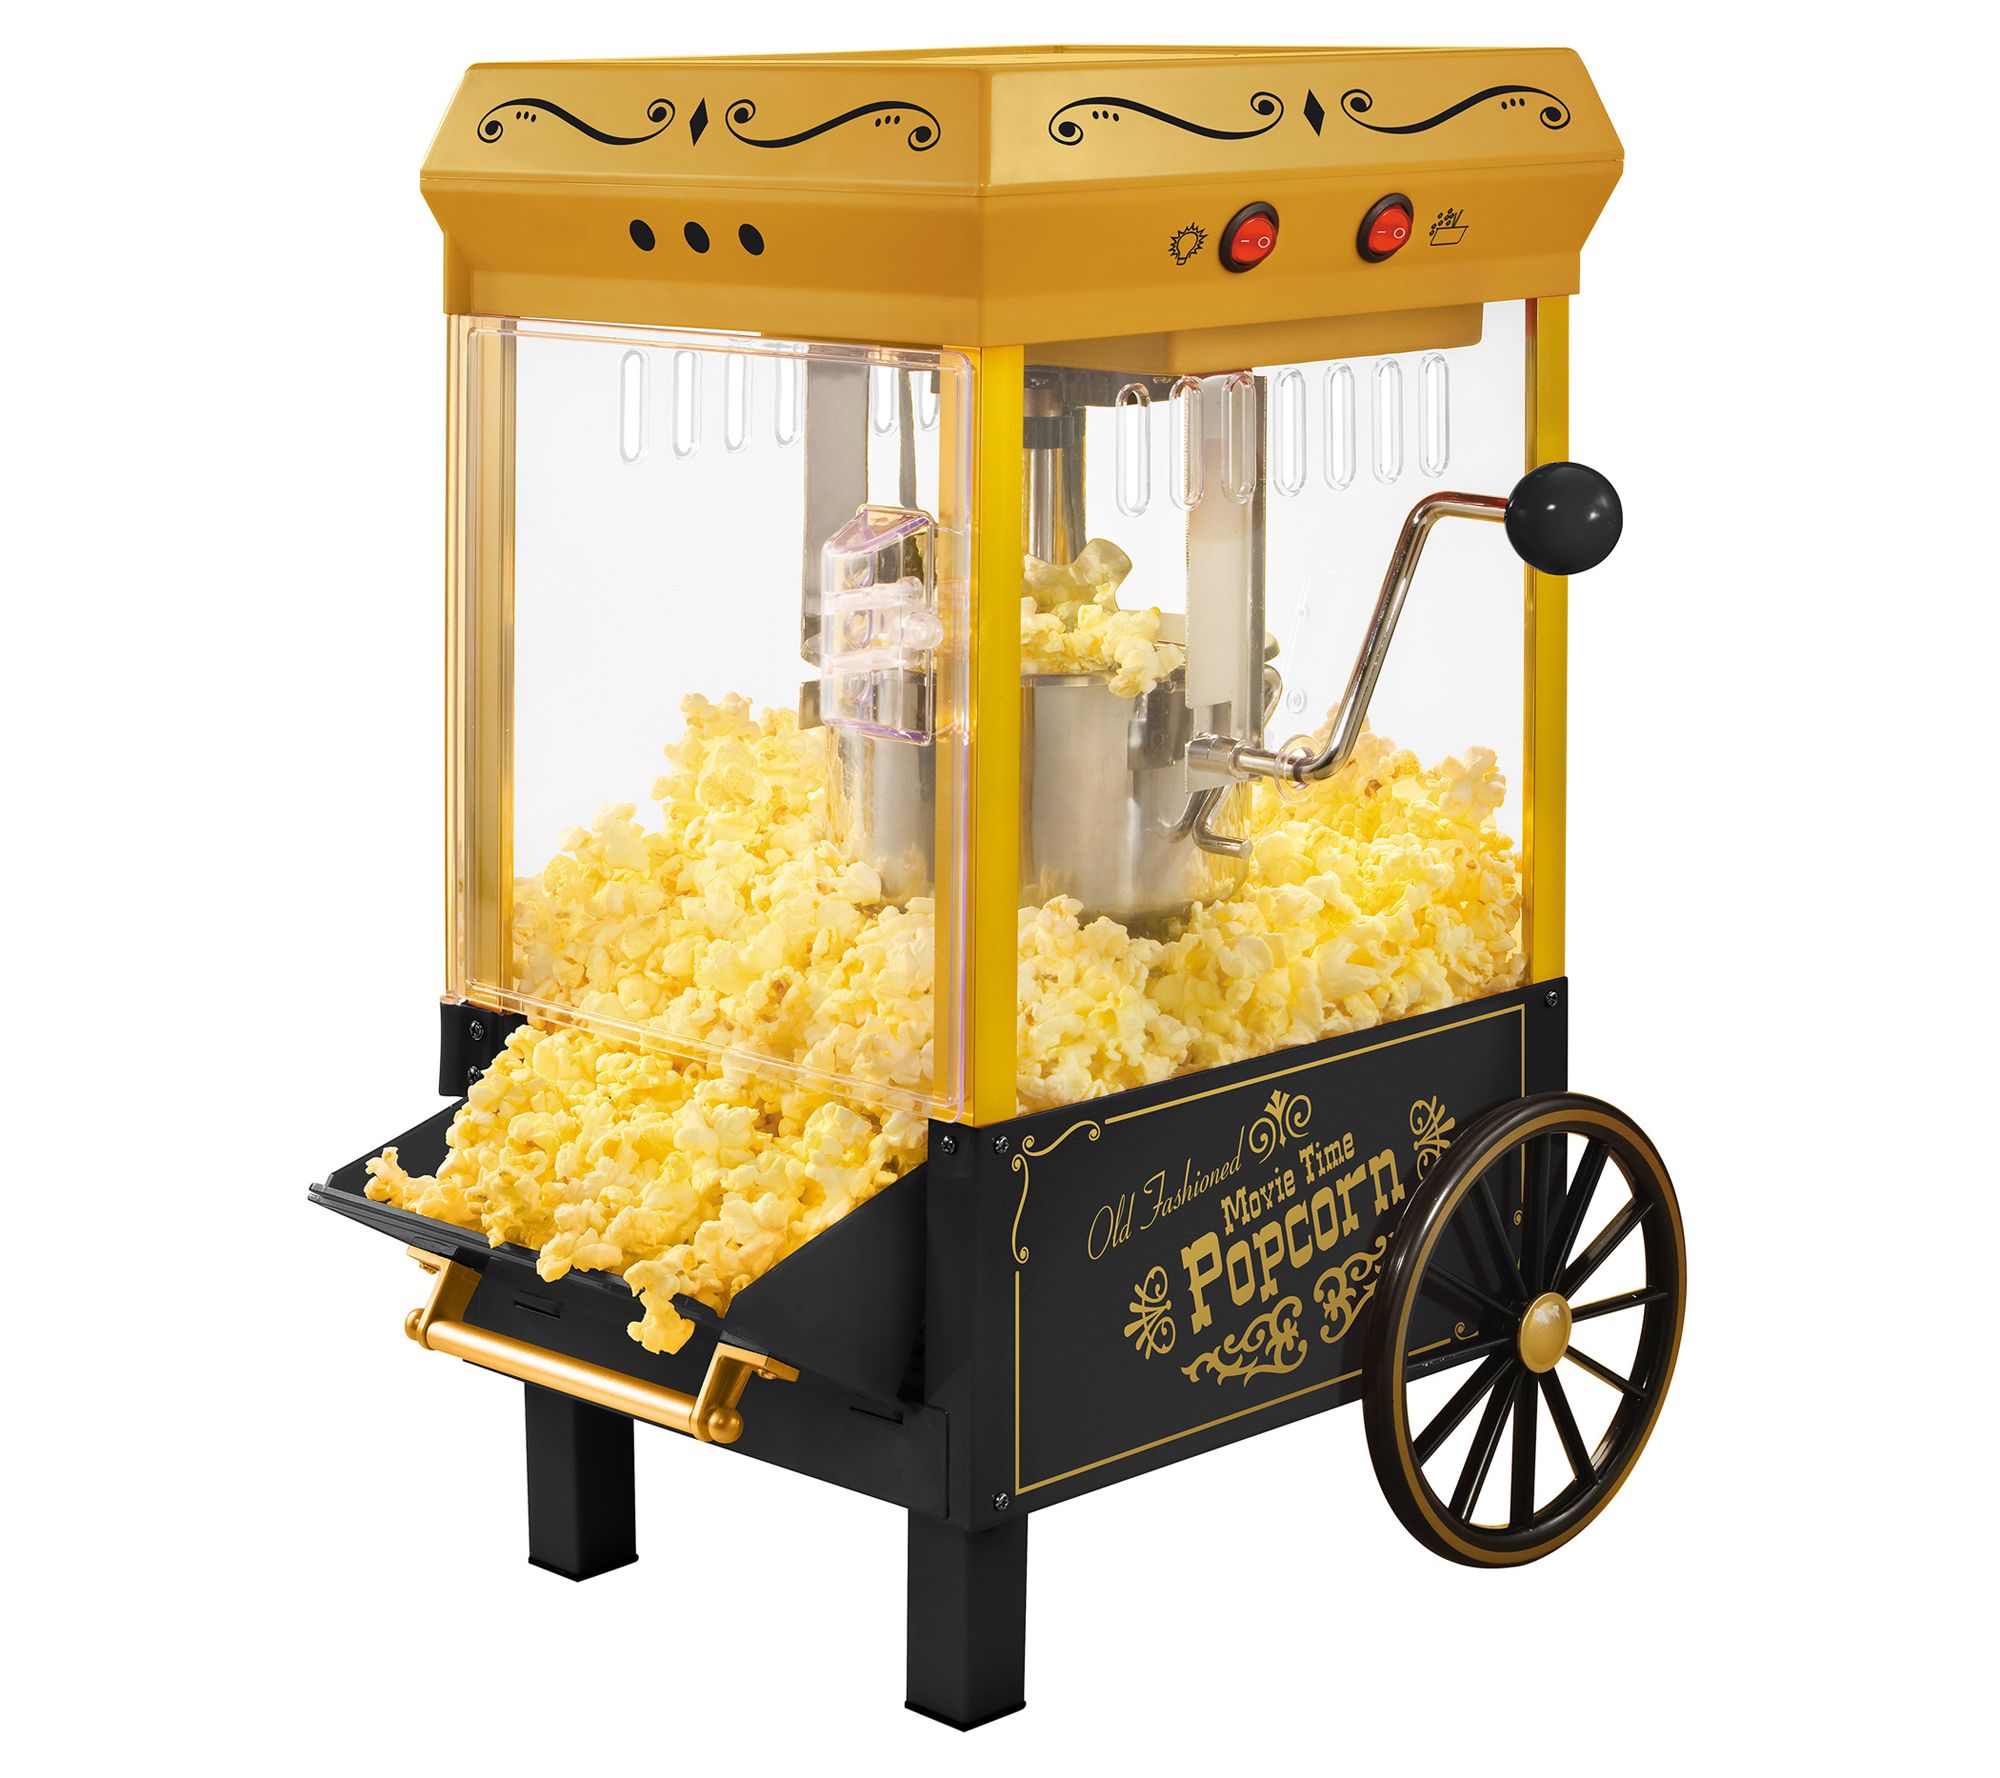 NHL Stanley Cup Popcorn Maker